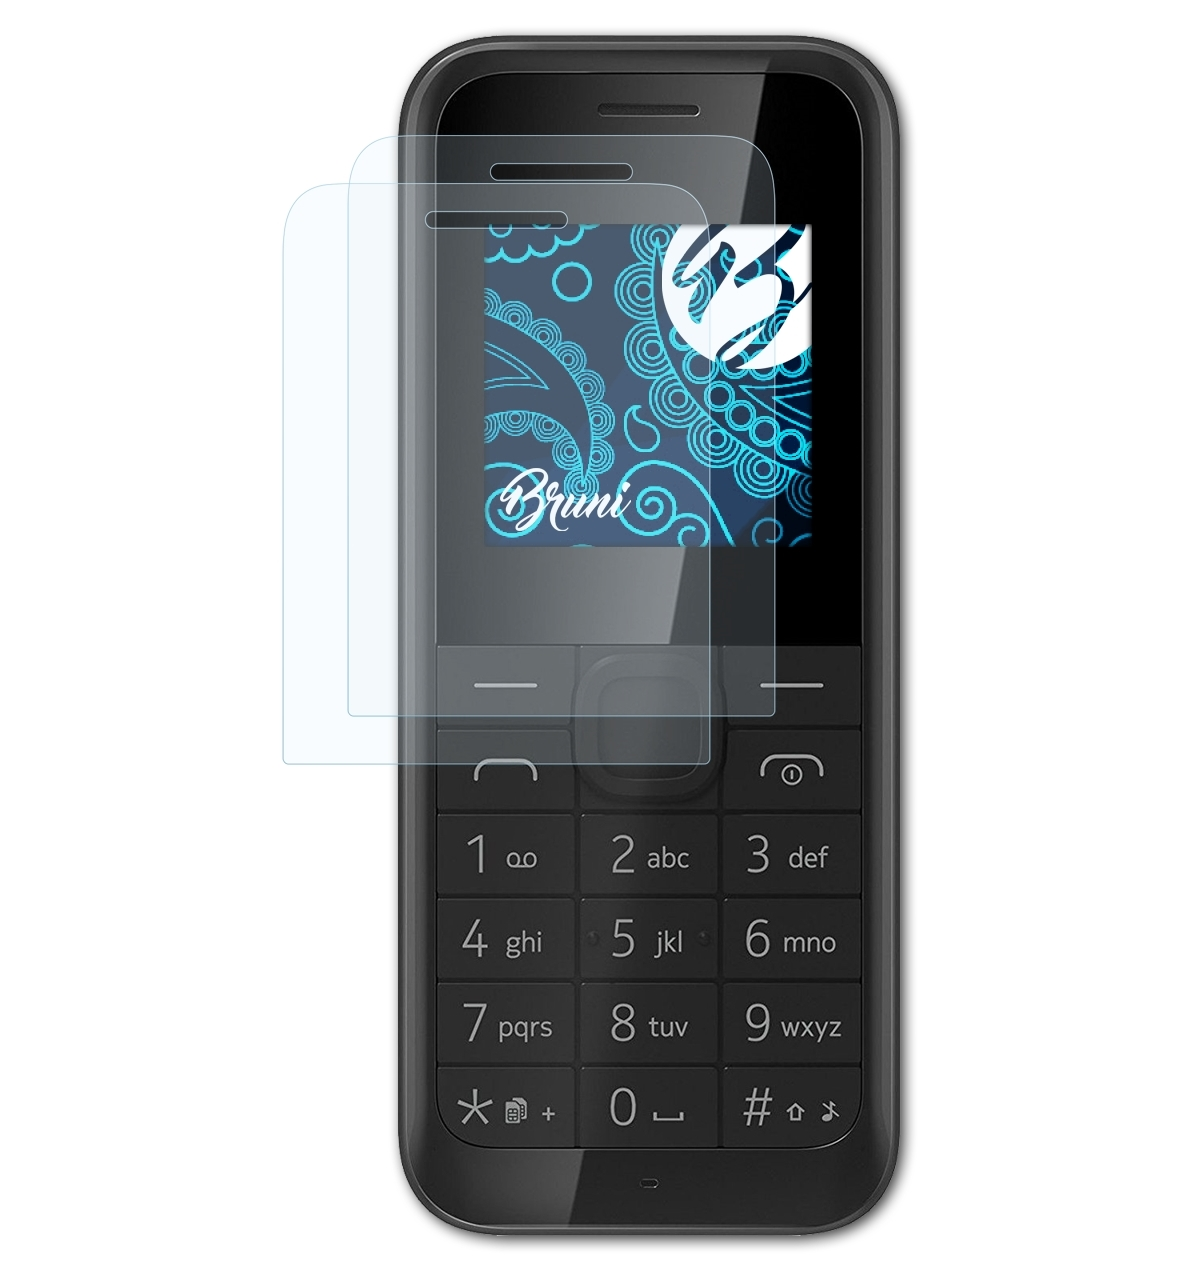 BRUNI 2x Basics-Clear 105) Schutzfolie(für Nokia